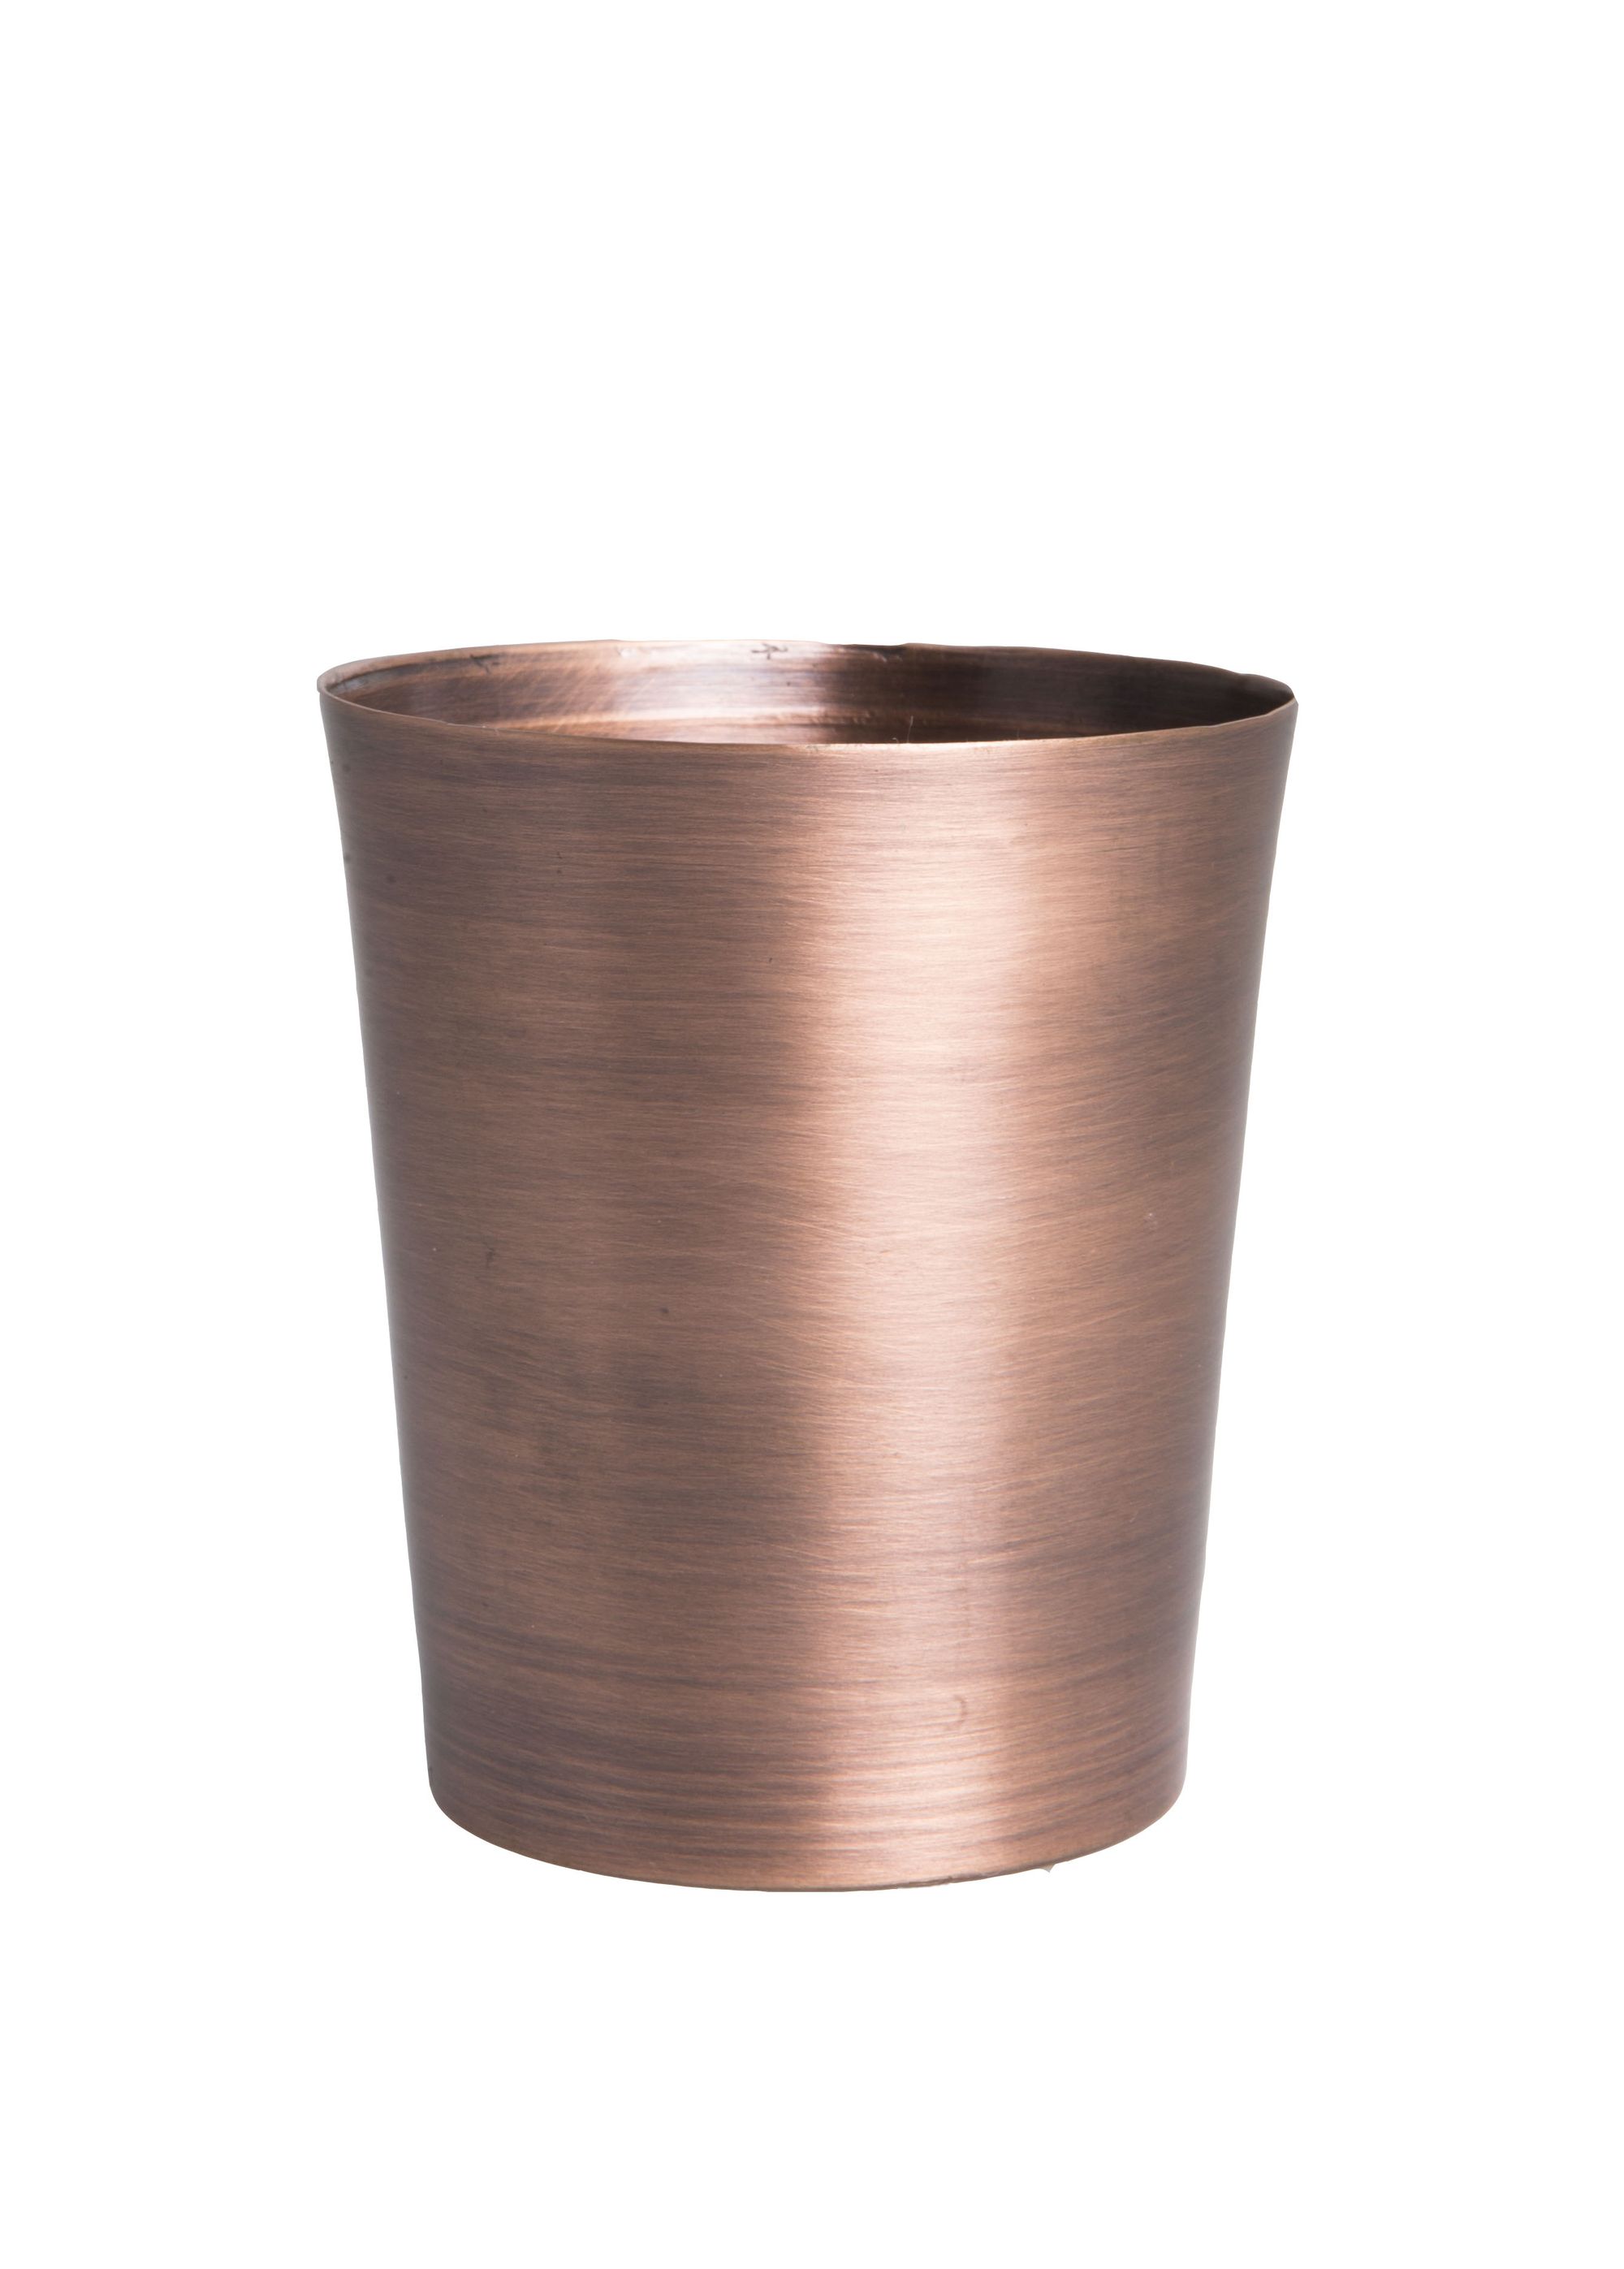 Unc Mangal Cup Antique Copper Gift